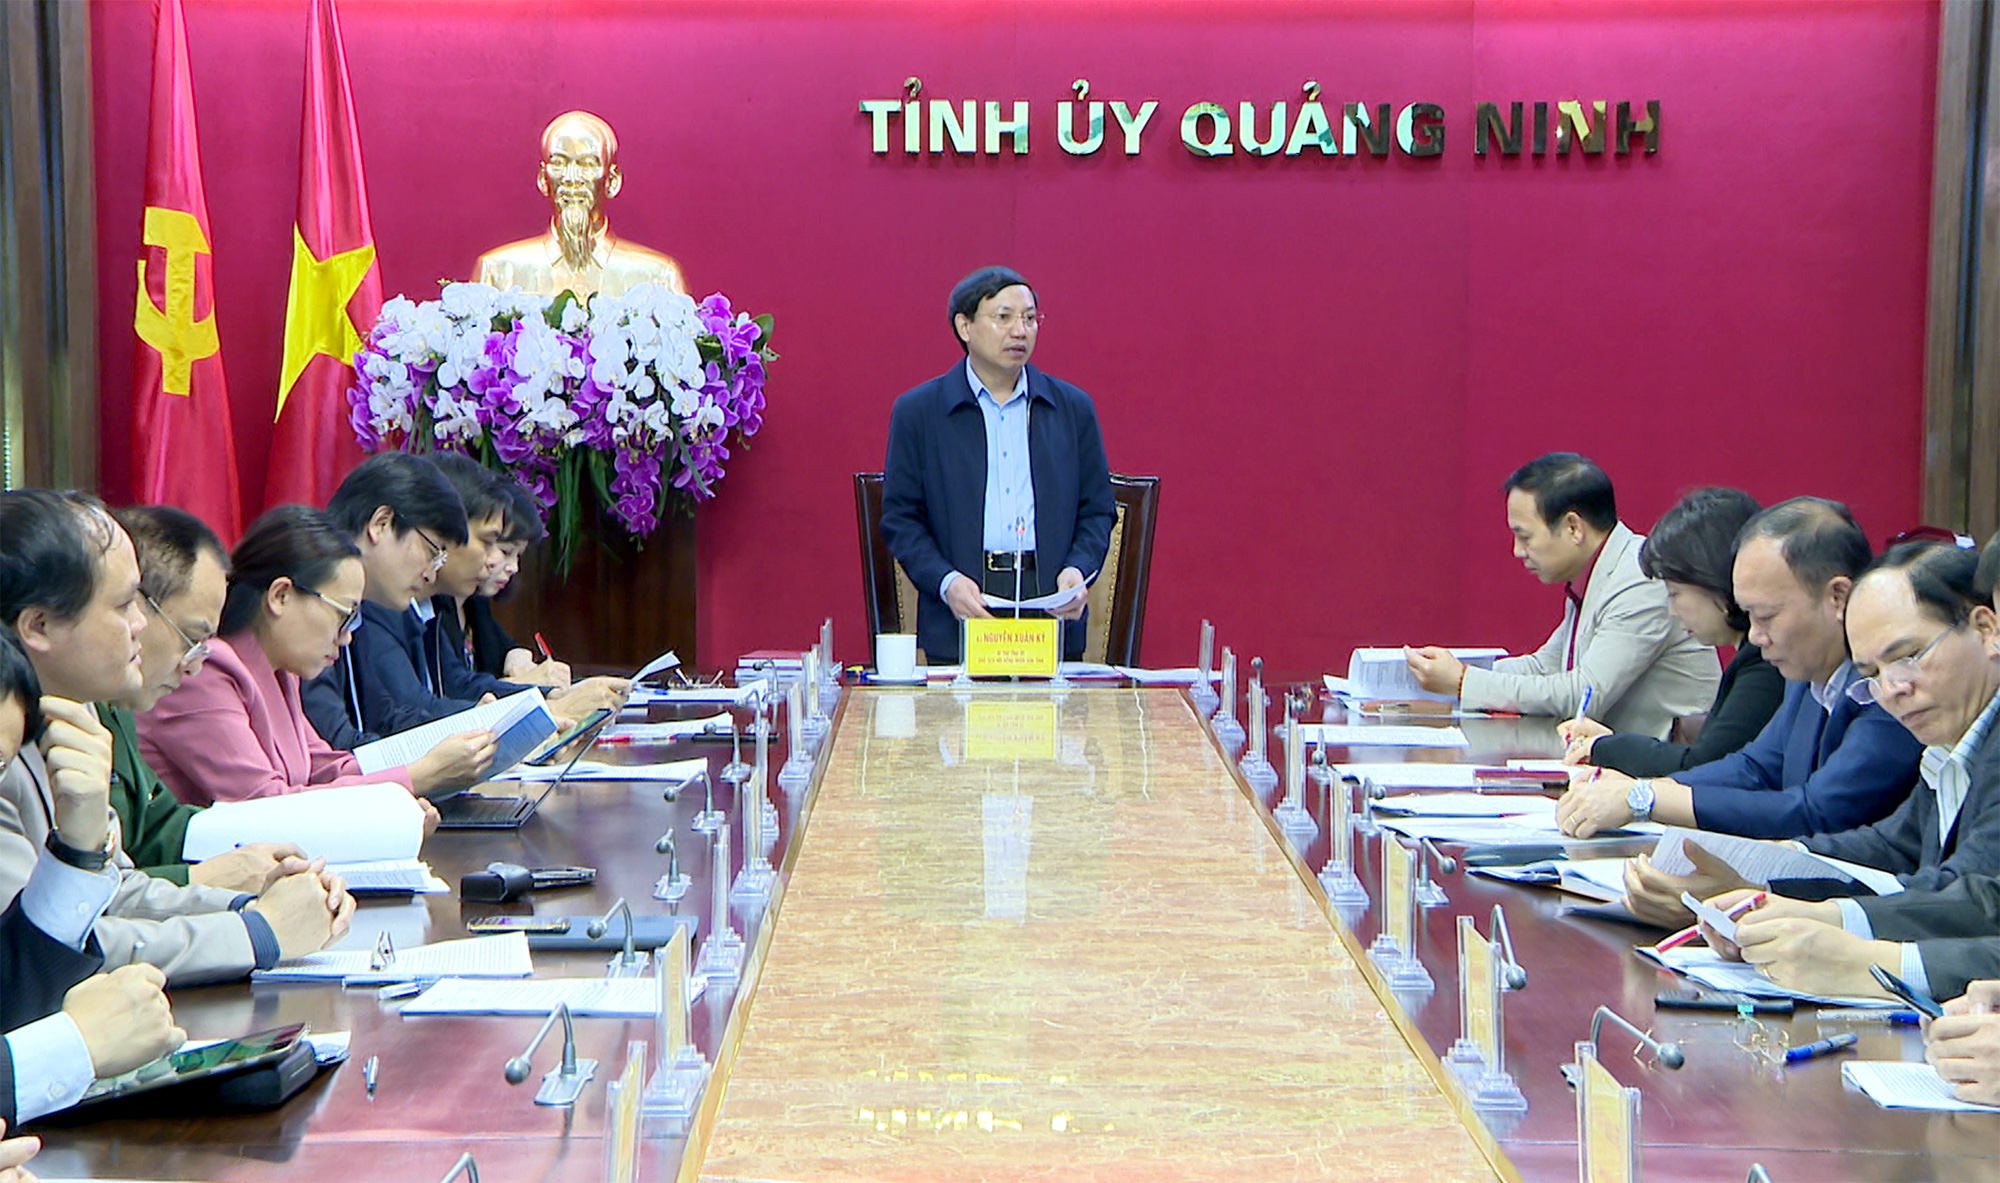 Đồng chí Nguyễn Xuân Ký, Bí thư Tỉnh ủy, Chủ tịch HĐND tỉnh, chủ trì buổi làm việc.